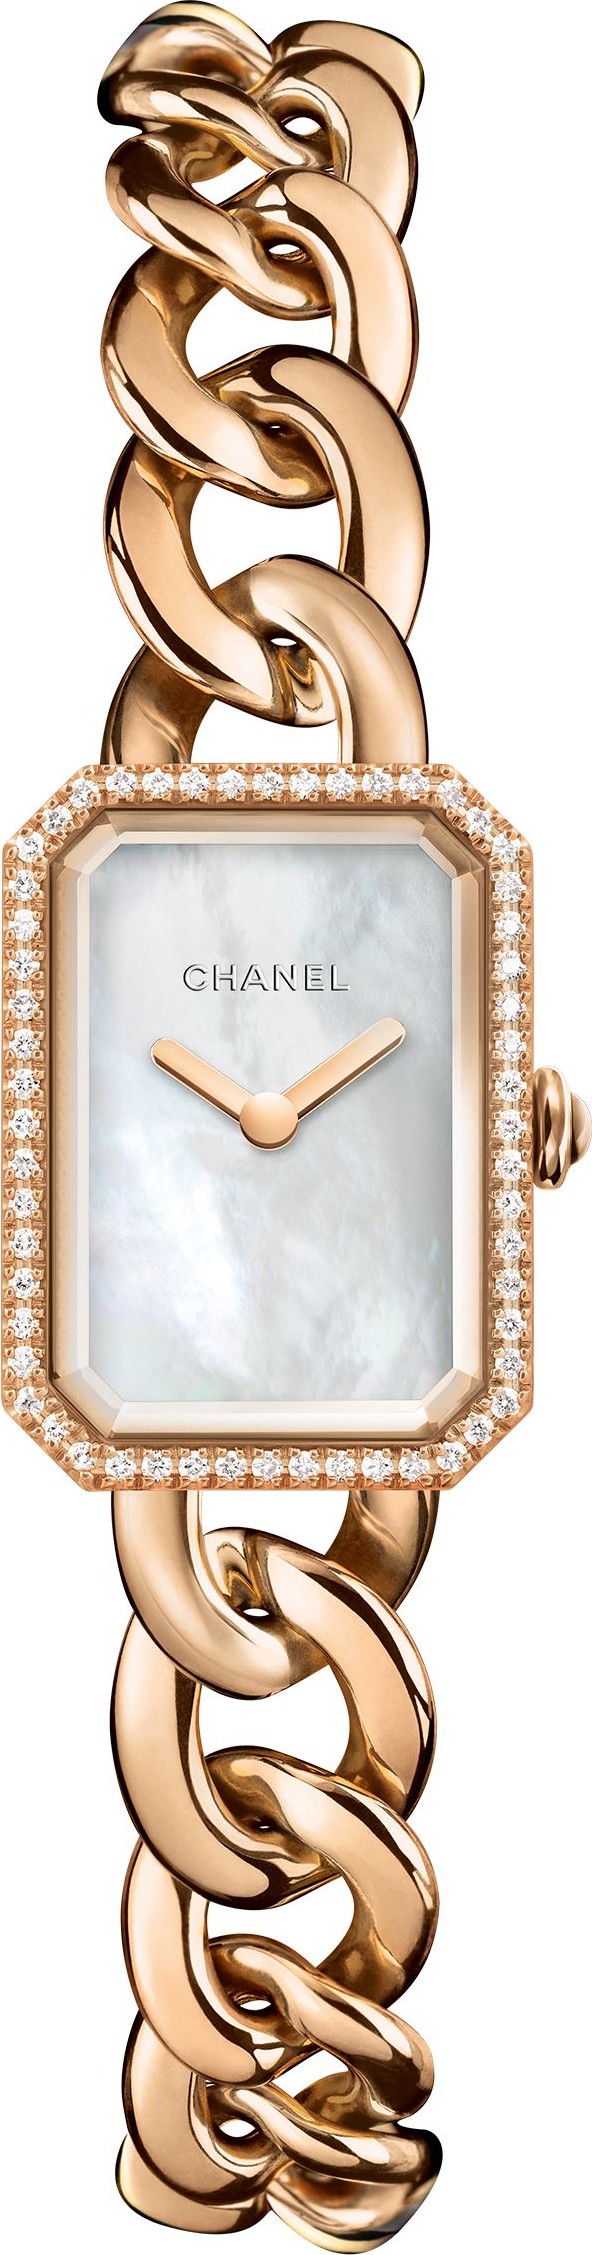 Wow Đẹp quáĐồng Hồ Nữ Chanel Dây Xích Rose Gold